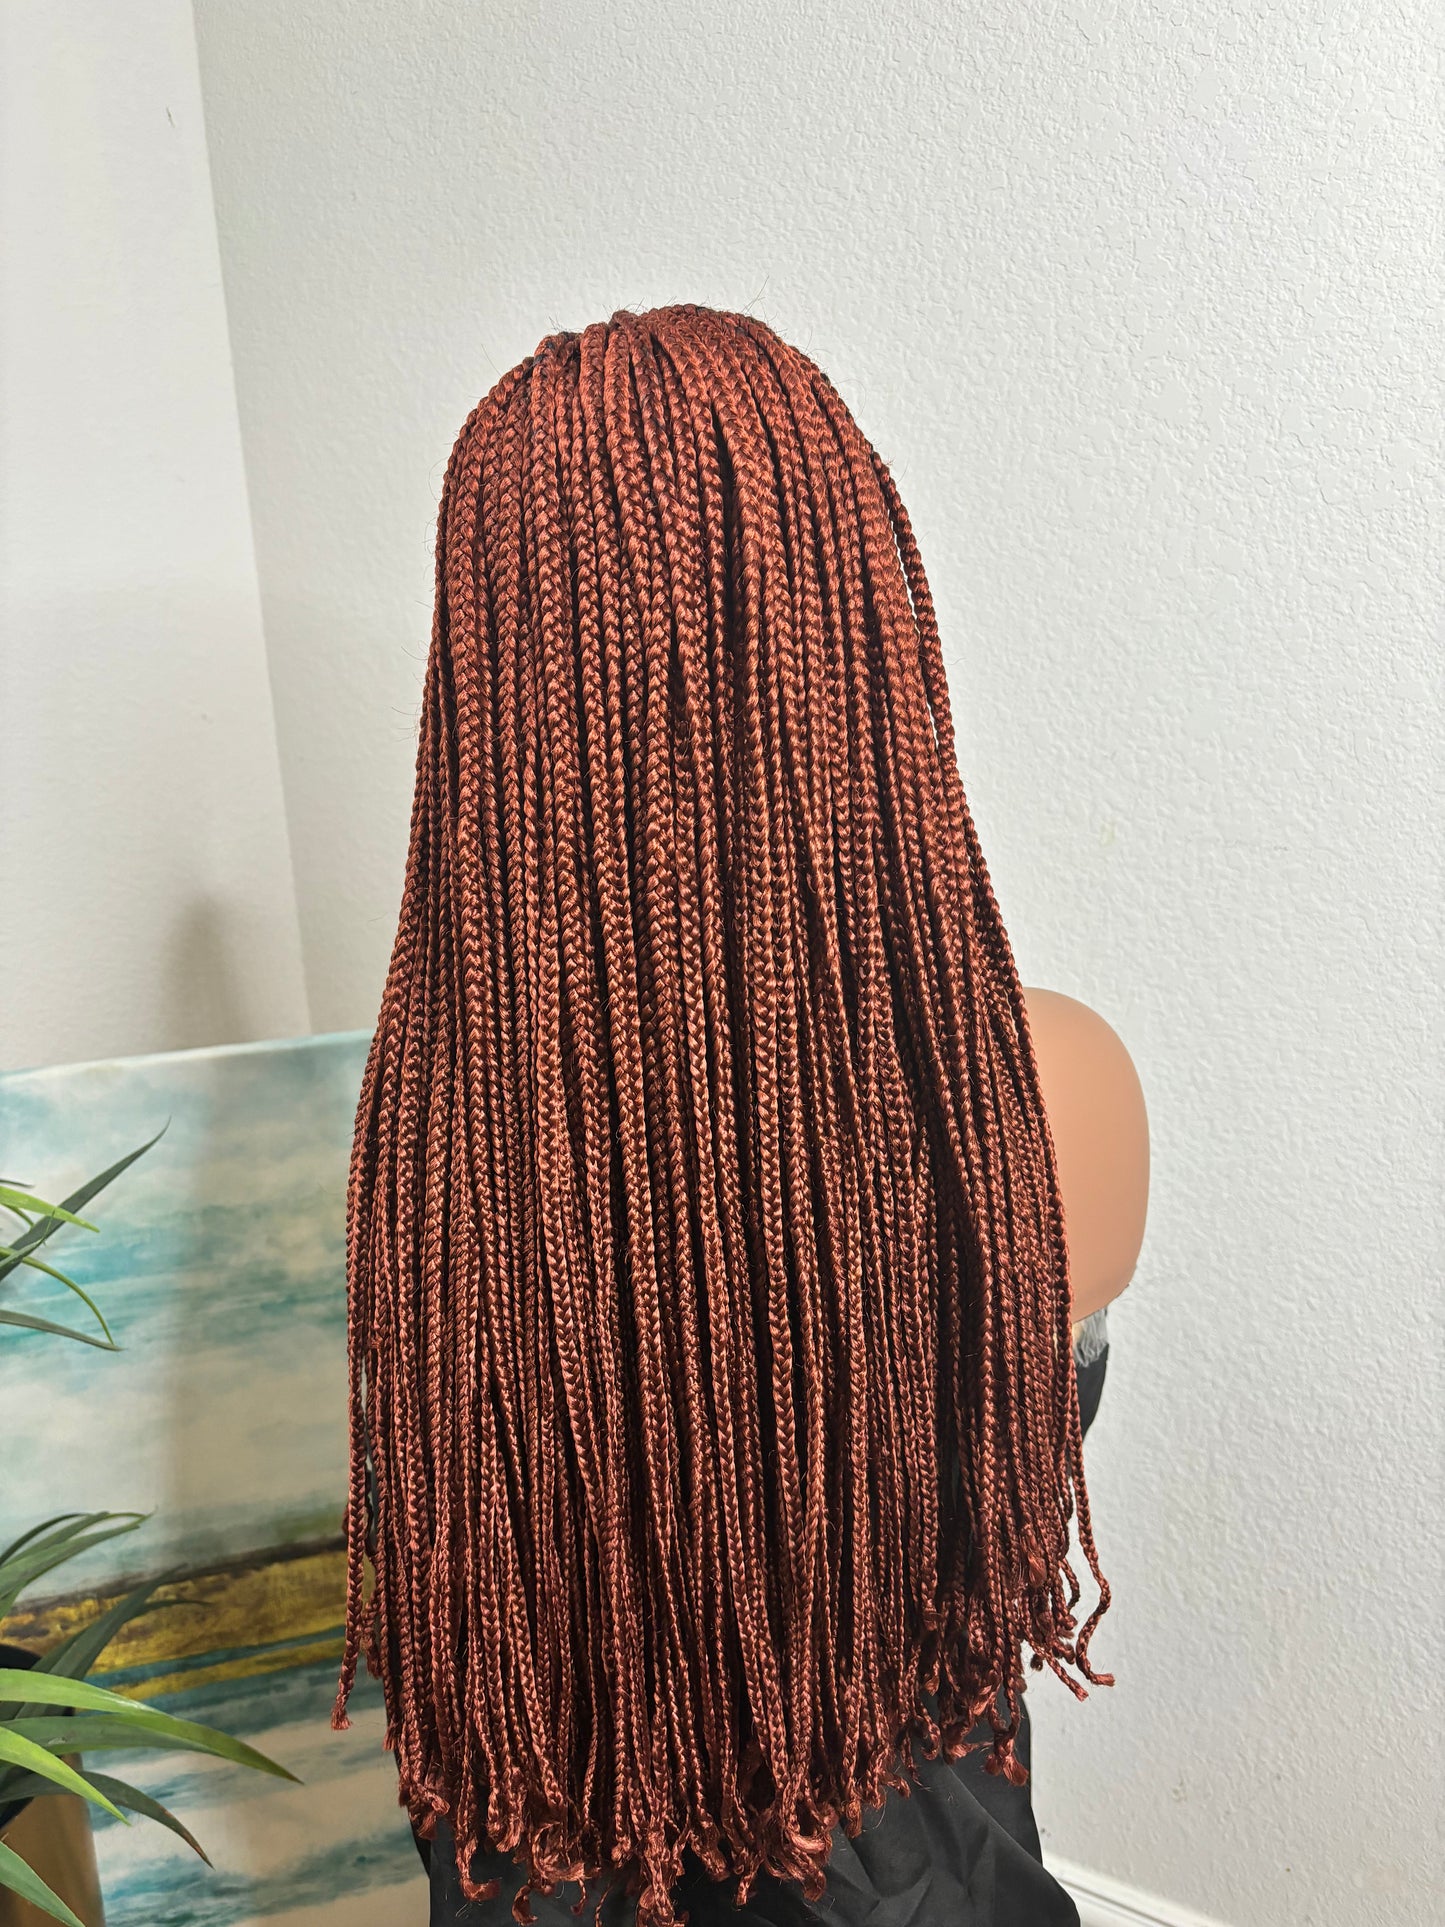 A1 Auburn box braids